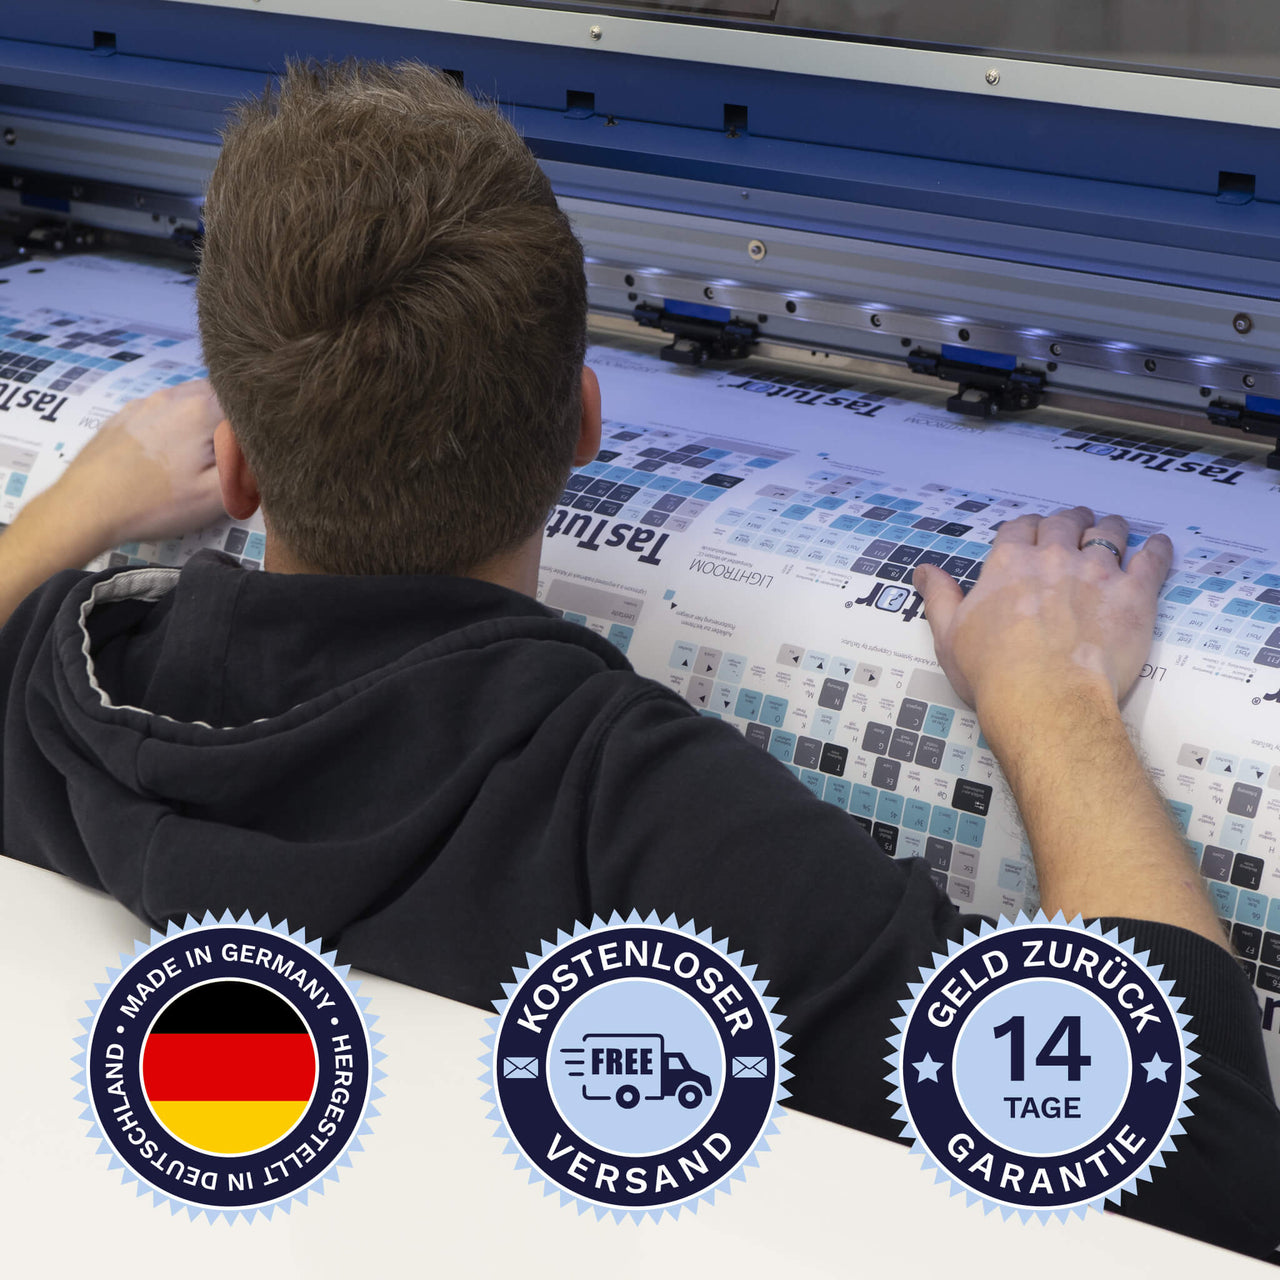 Russische Tastaturaufkleber werden in Deutschland hergestellt. Der Versand ist kostenlos und wir gewährleisten 14 Tage Geld zurück Garantie | TasTutor